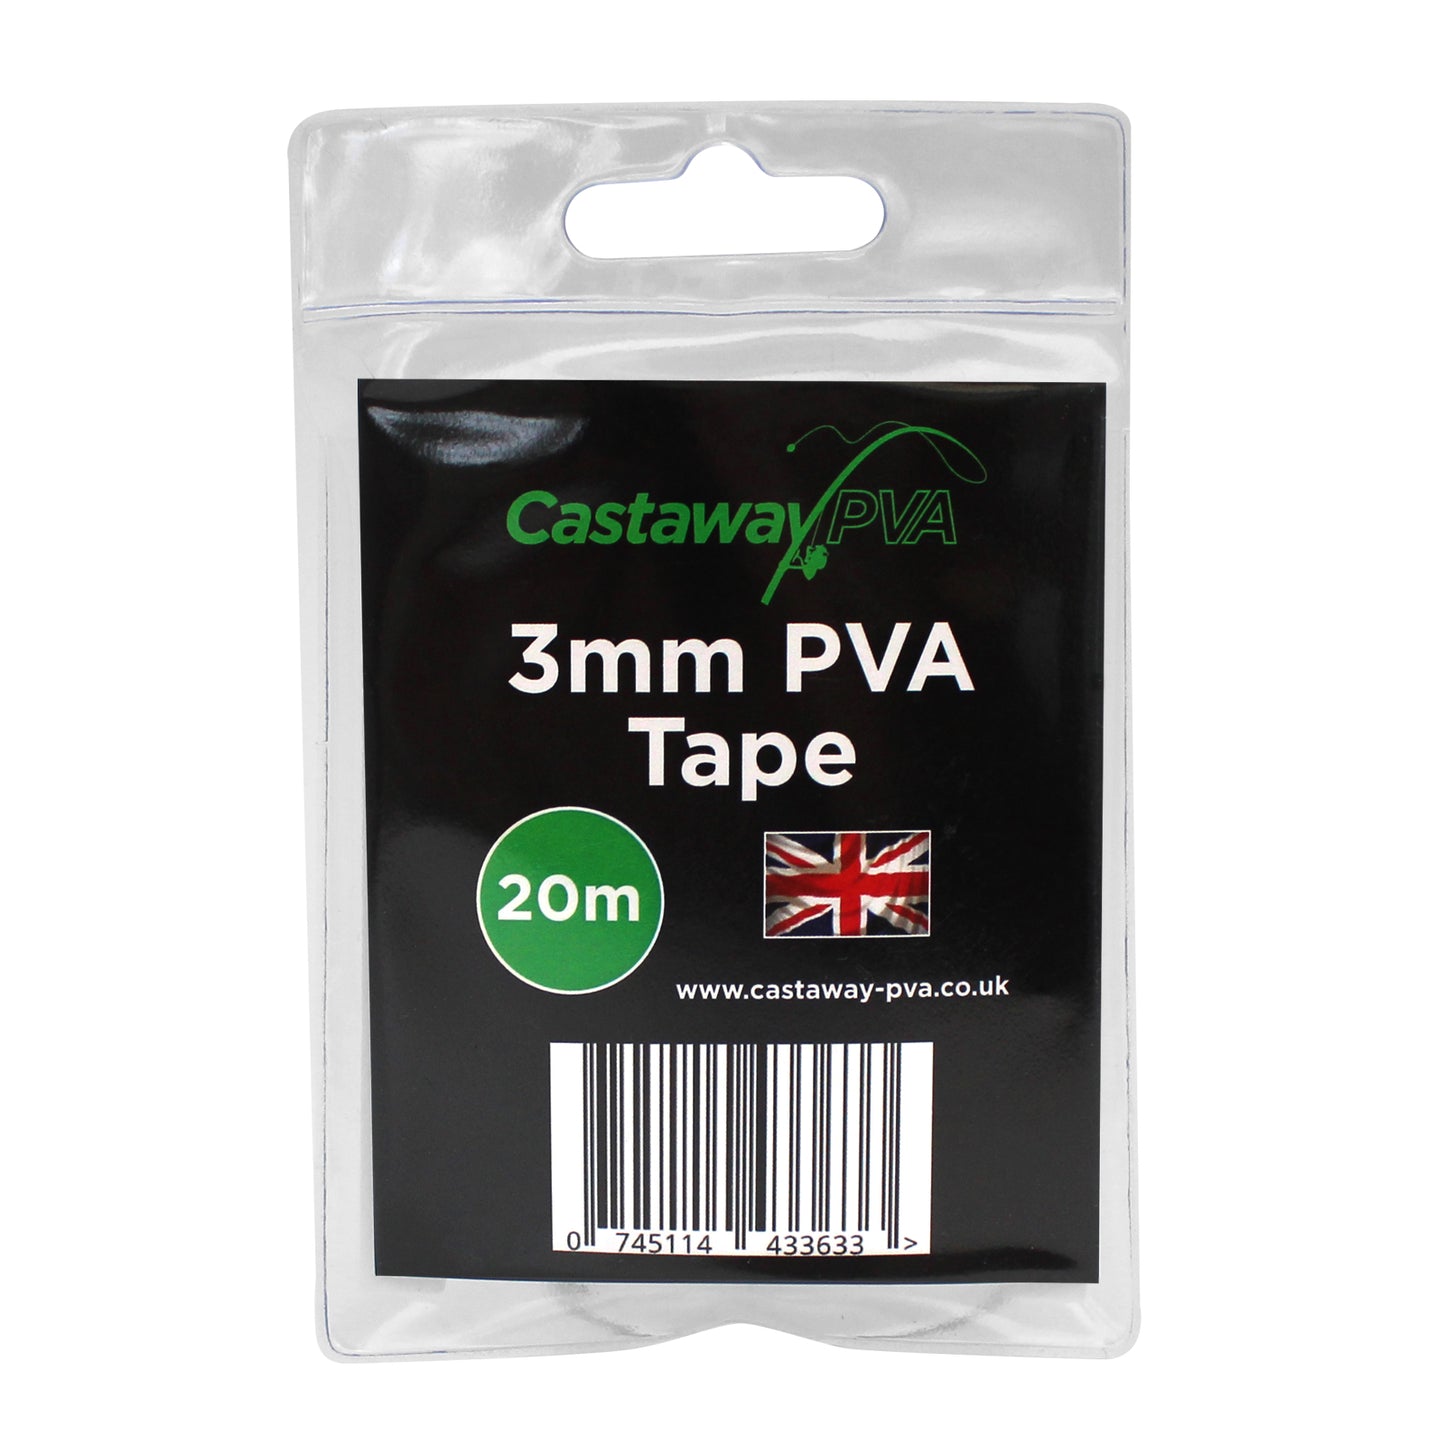 Castaway PVA 3mm PVA Tape 20m